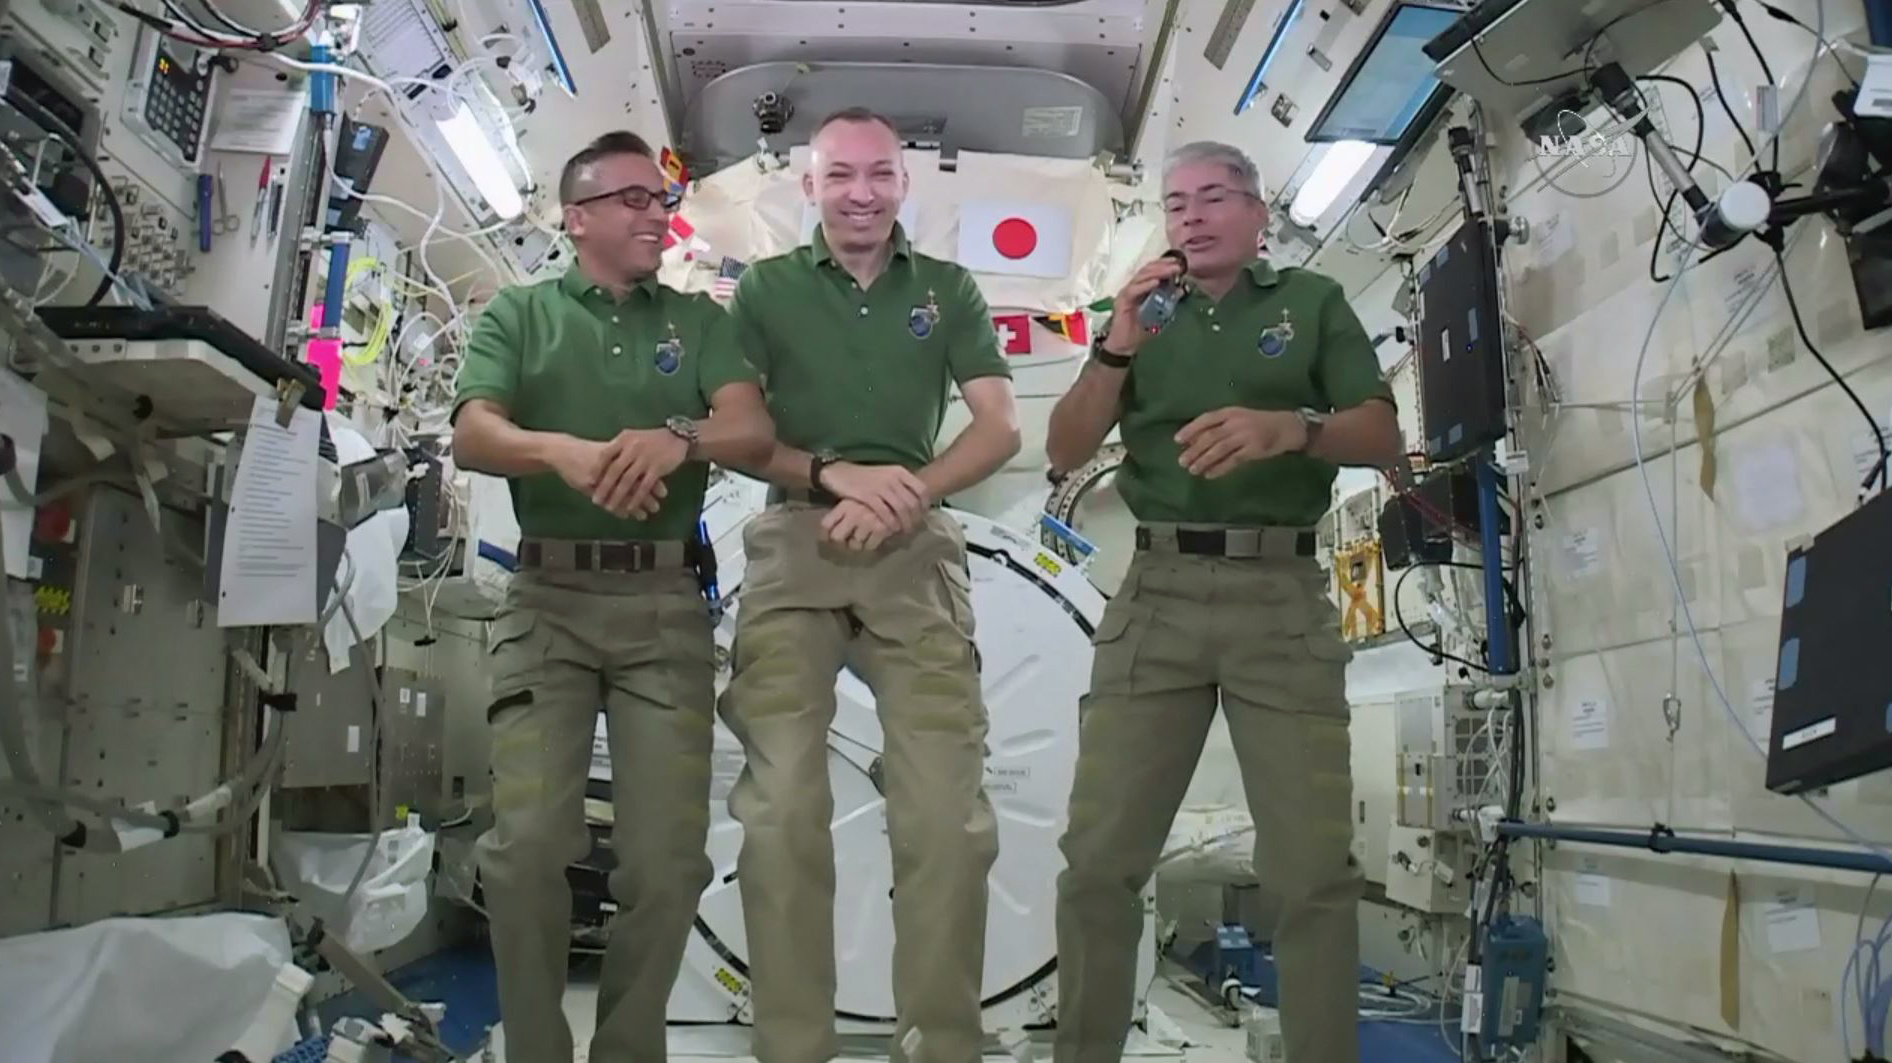 Día de Acción de Gracias en el espacio: astronautas planean celebración